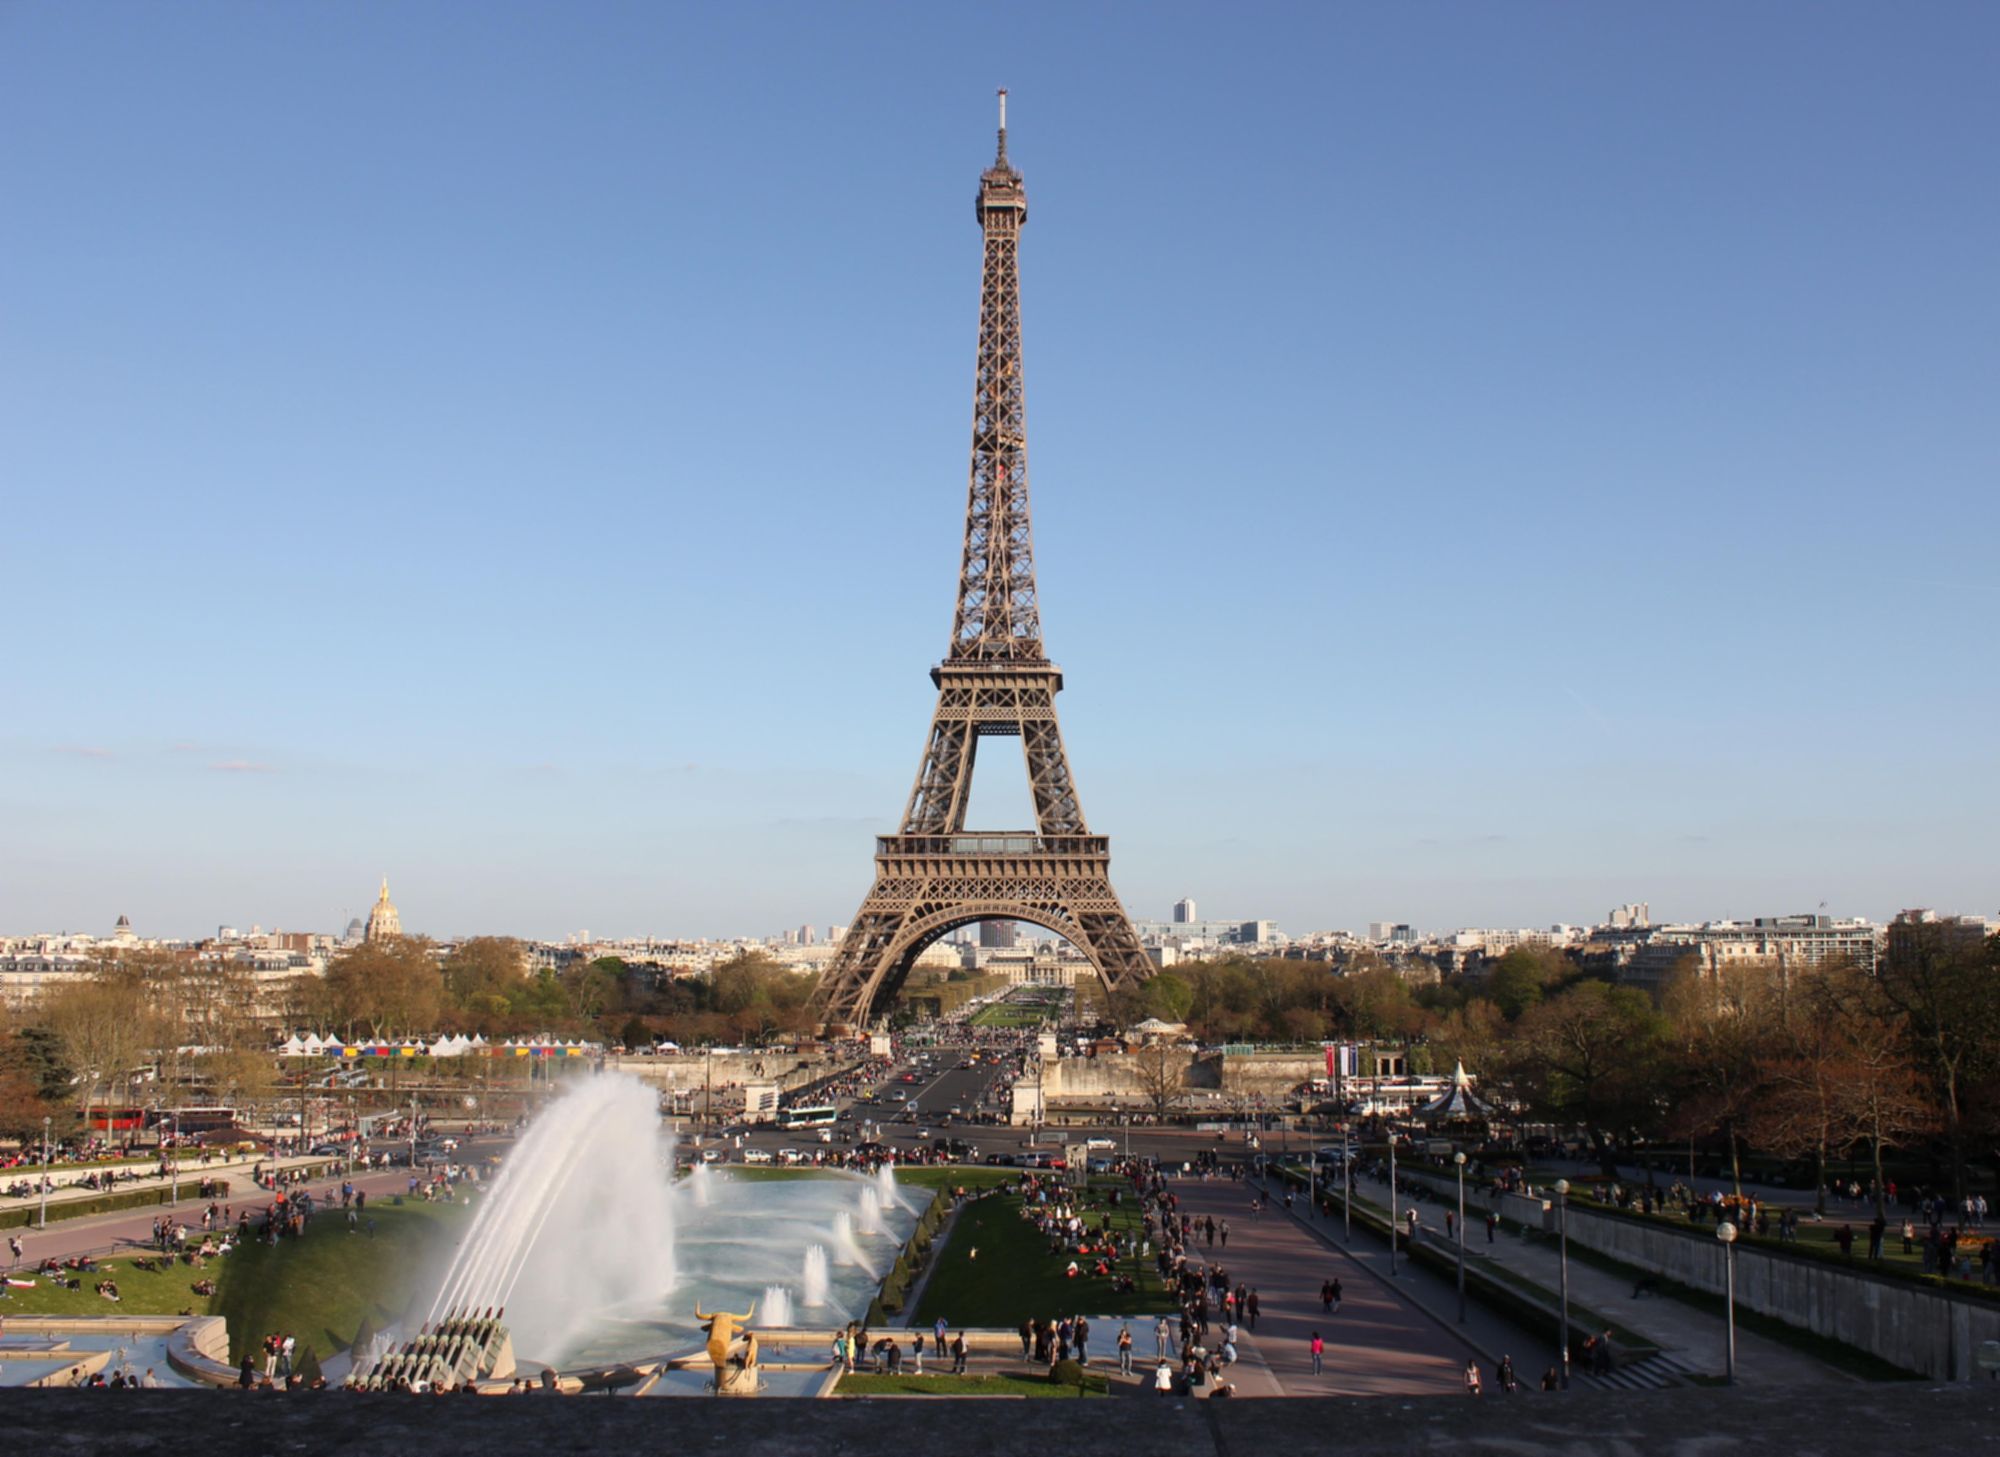 Paris blurred